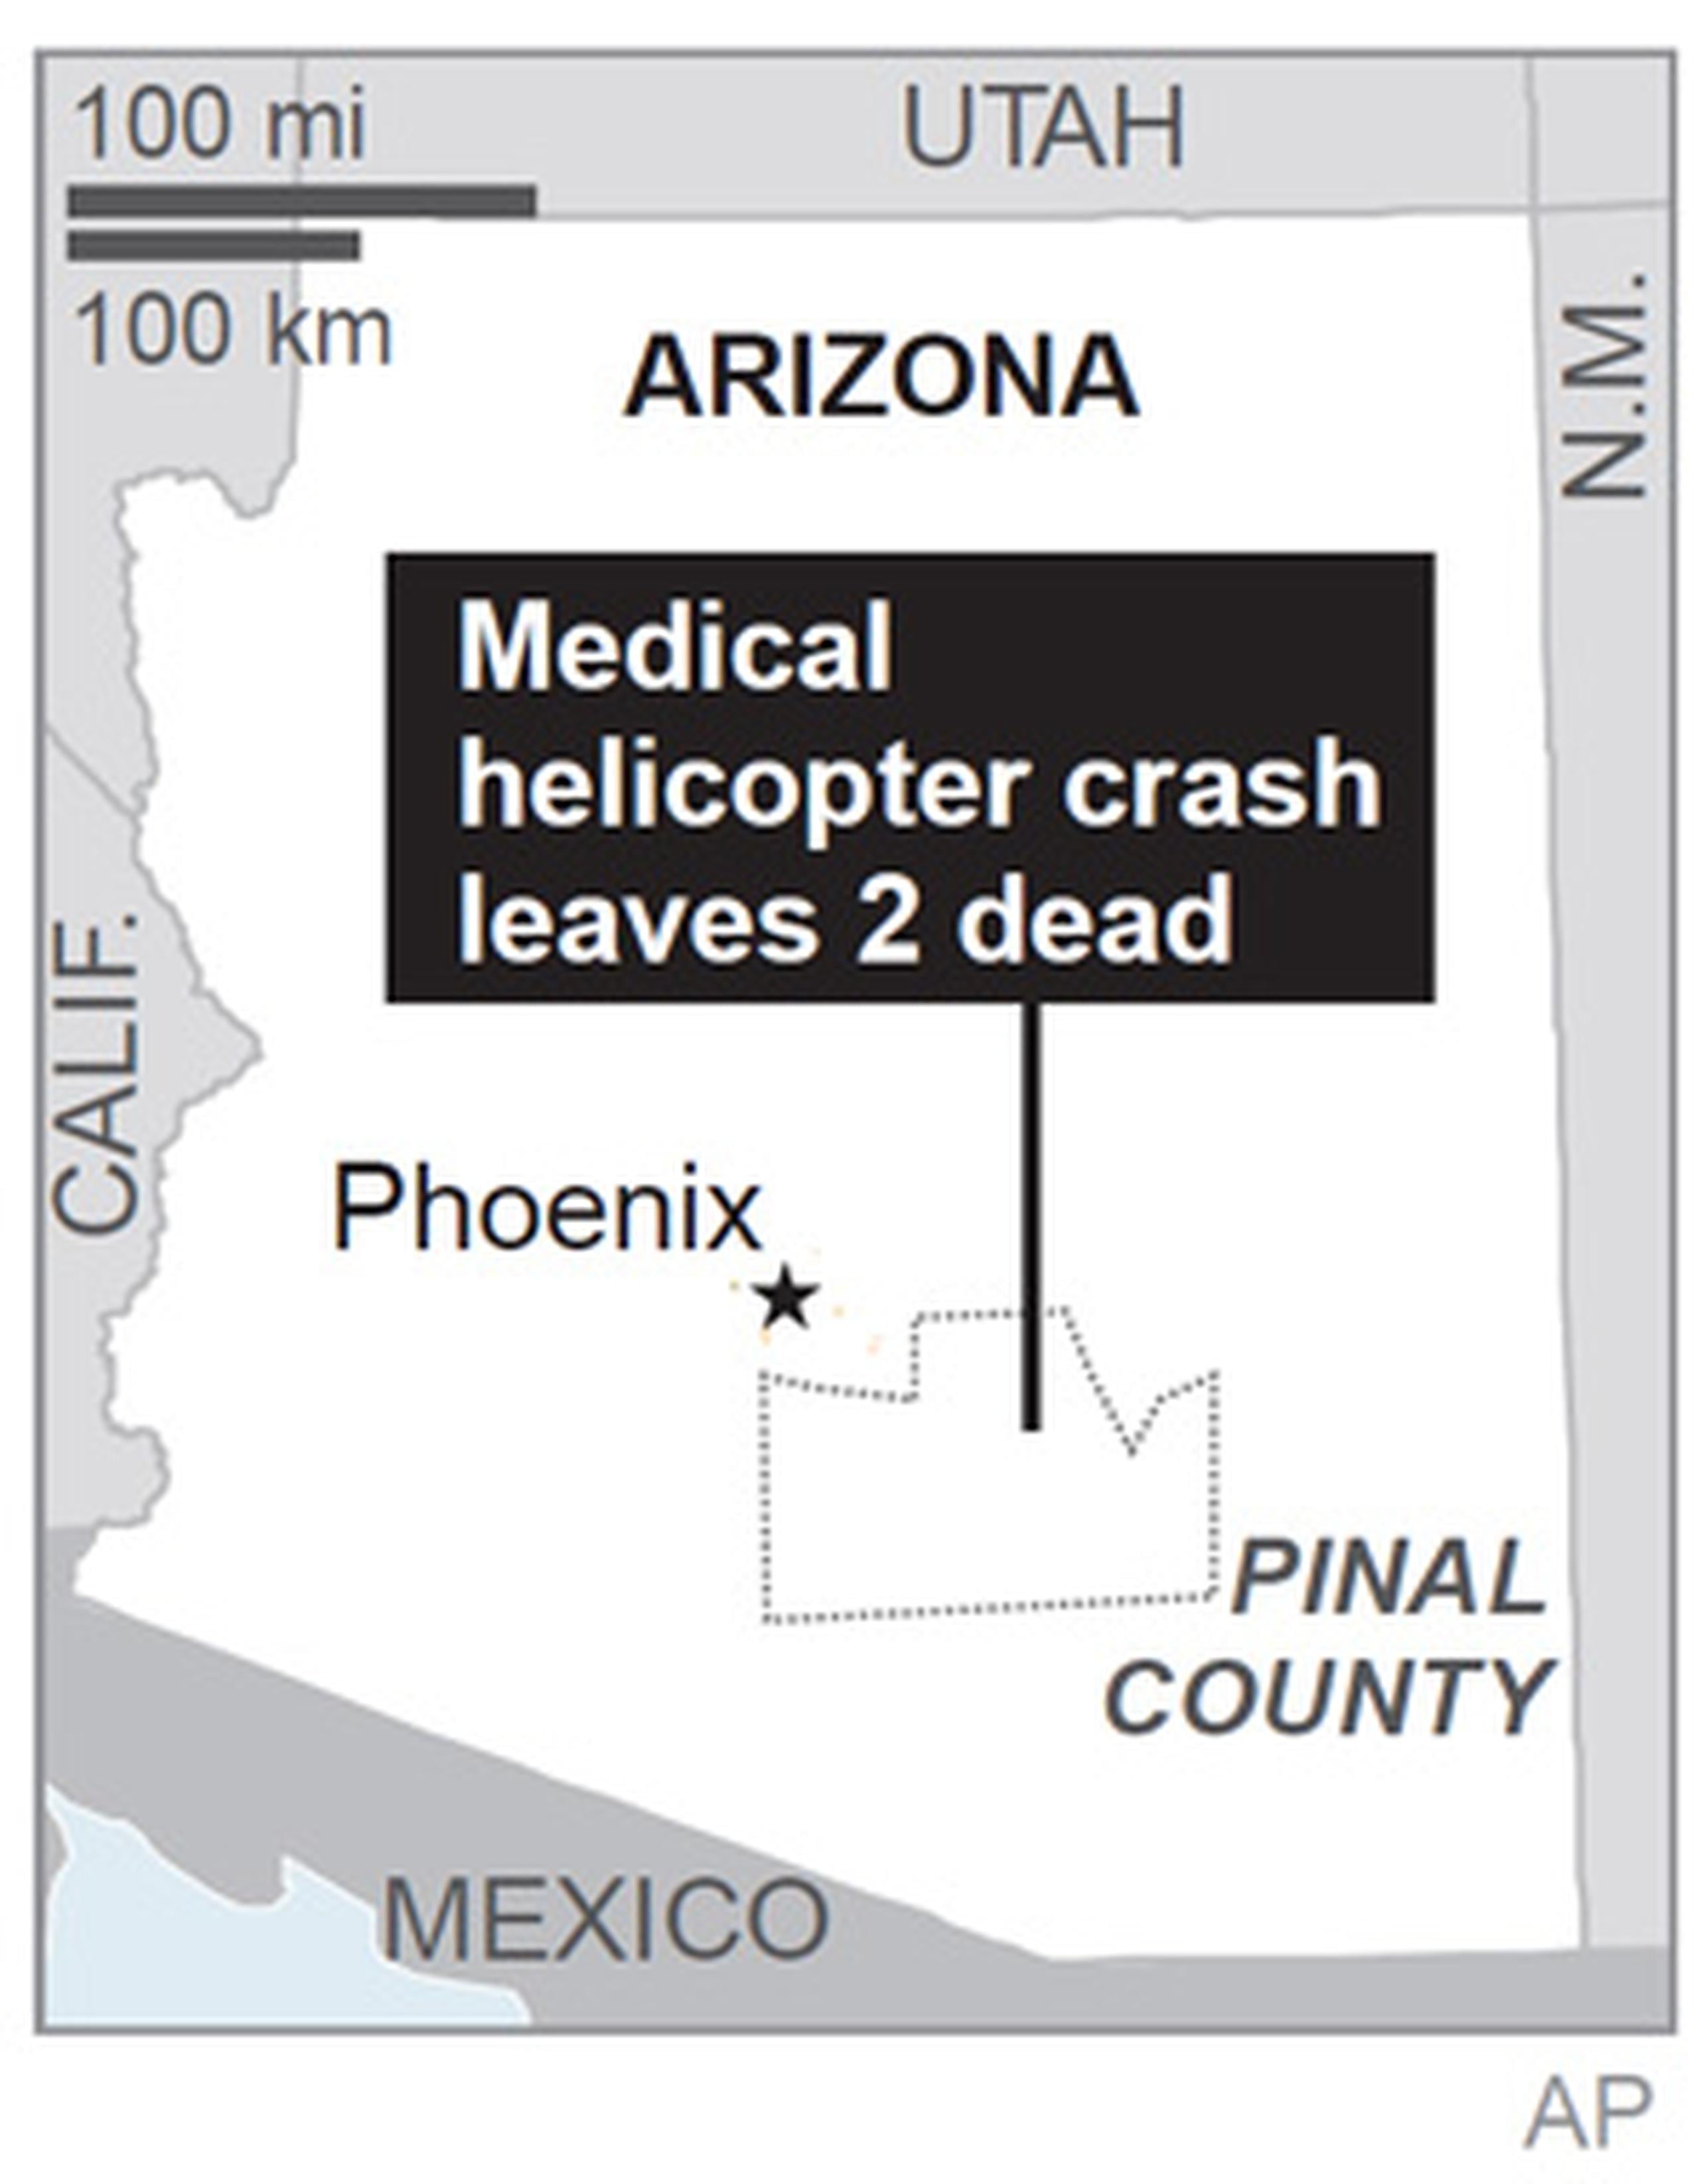 El helicóptero se precipitó por causas desconocidas en Pinal County, a unas 55 millas al este de Phoenix. (AP)